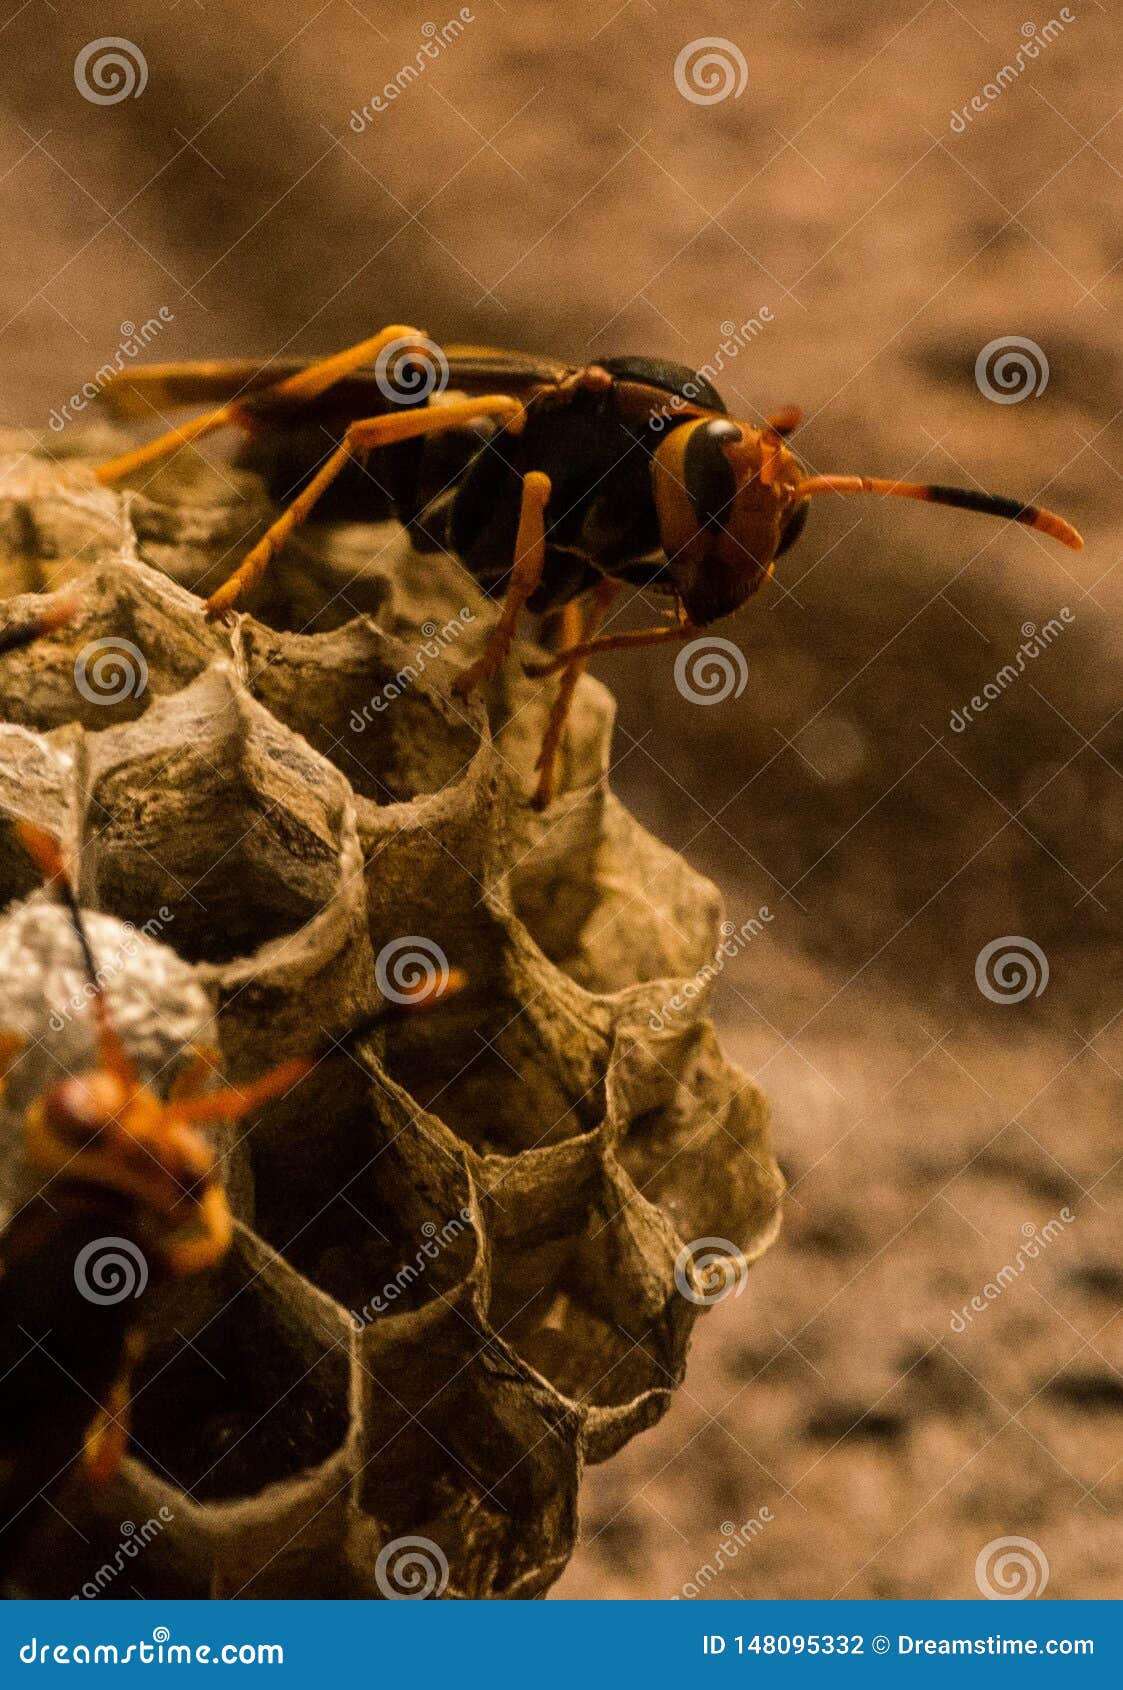 wasp honeycomb and angry wasp